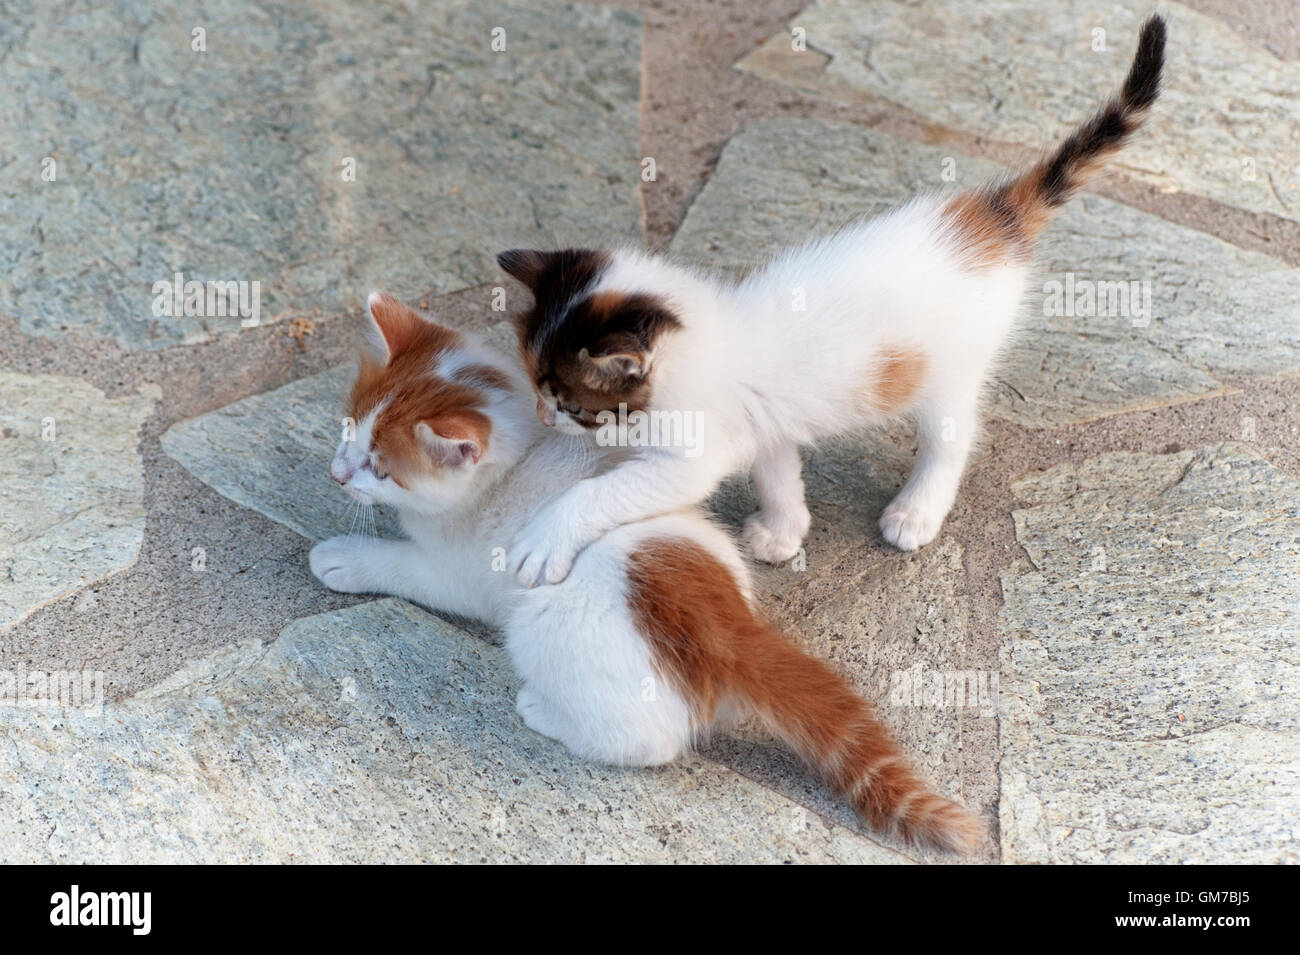 Un alto ángulo de visualización de dos gatitos jugando Foto de stock